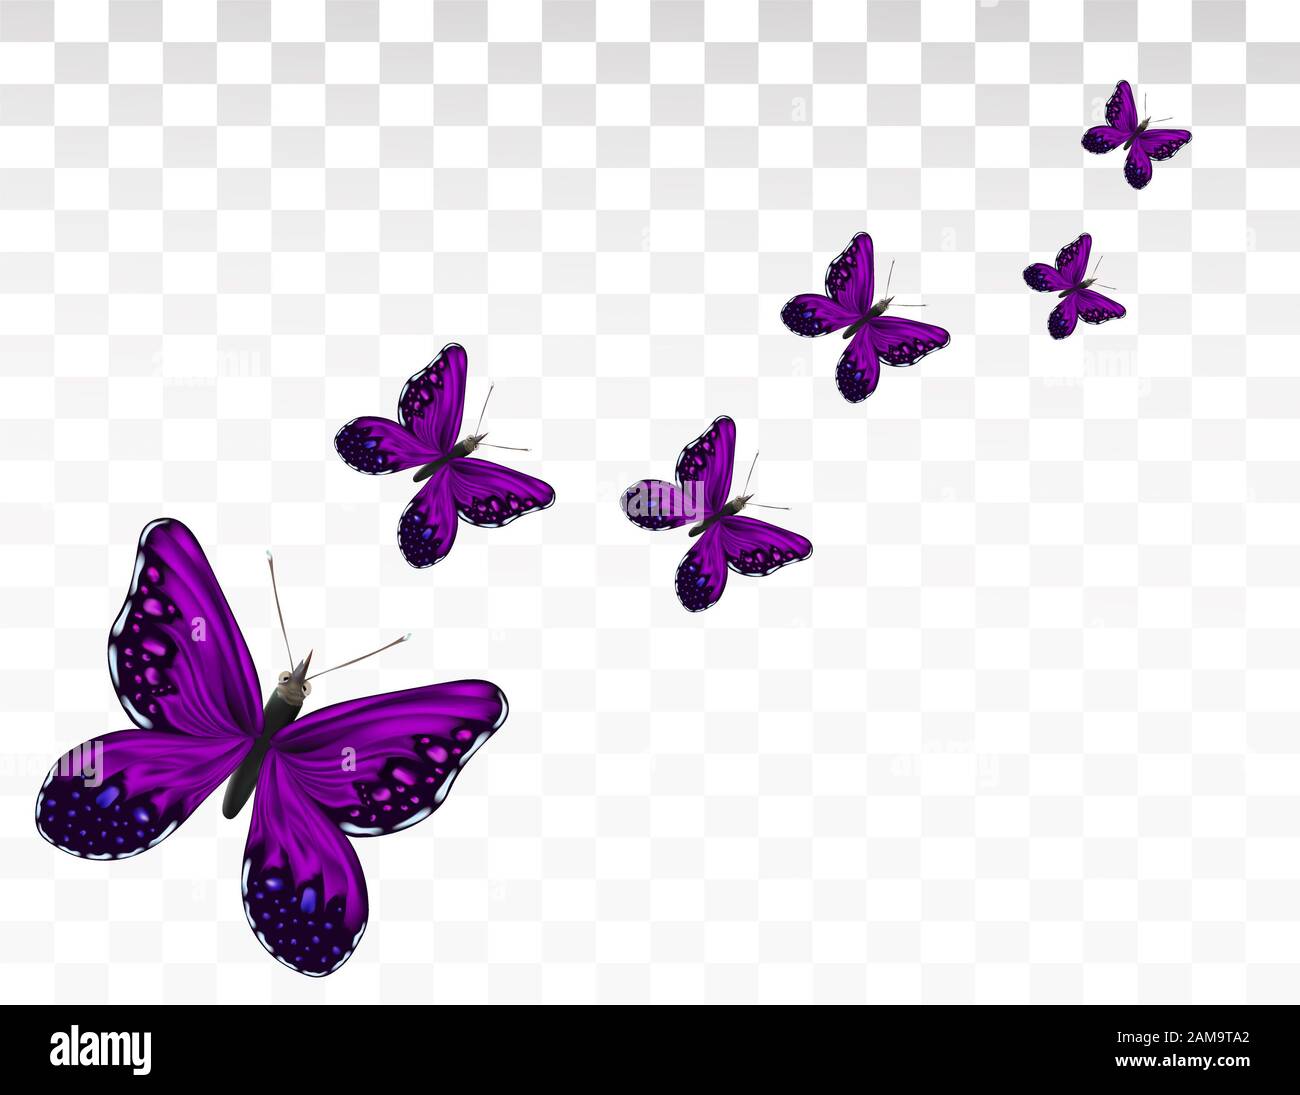 Đắm chìm trong sắc màu tuyệt đẹp của bướm đang tung cánh trên nền trong suốt, bạn sẽ được trải nghiệm một khoảnh khắc thật tuyệt vời với hình ảnh này. Hãy cùng chiêm ngưỡng và cảm nhận sự mê hoặc của bướm đẹp bay tít này.